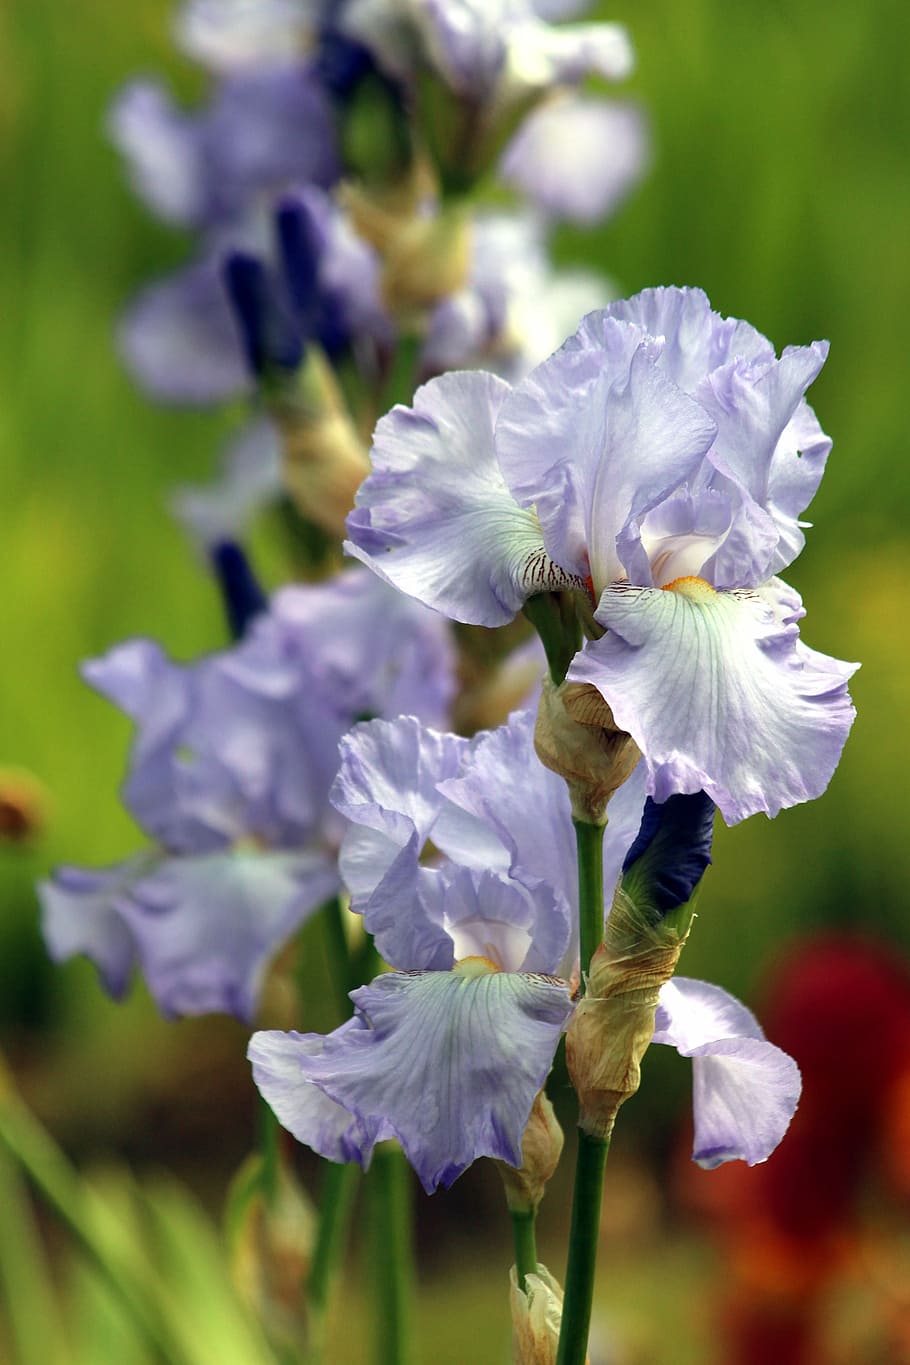 selektif, fokus fotografi, biru, putih, bunga petaled, iris biru, bunga, musim panas, taman bunga iris, bunga musim panas